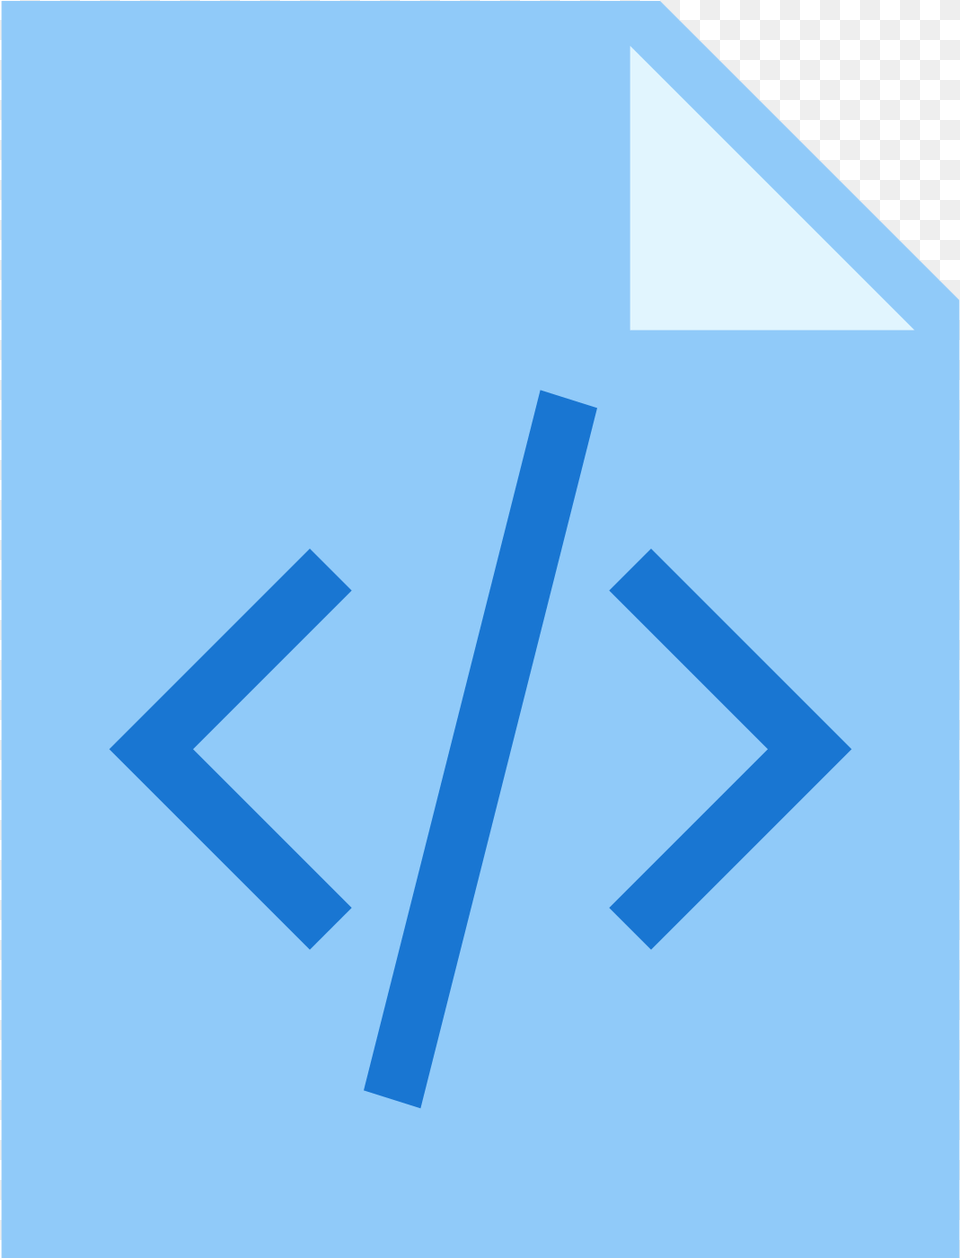 Chrome Dev Tools Logo, Text, Symbol Free Transparent Png